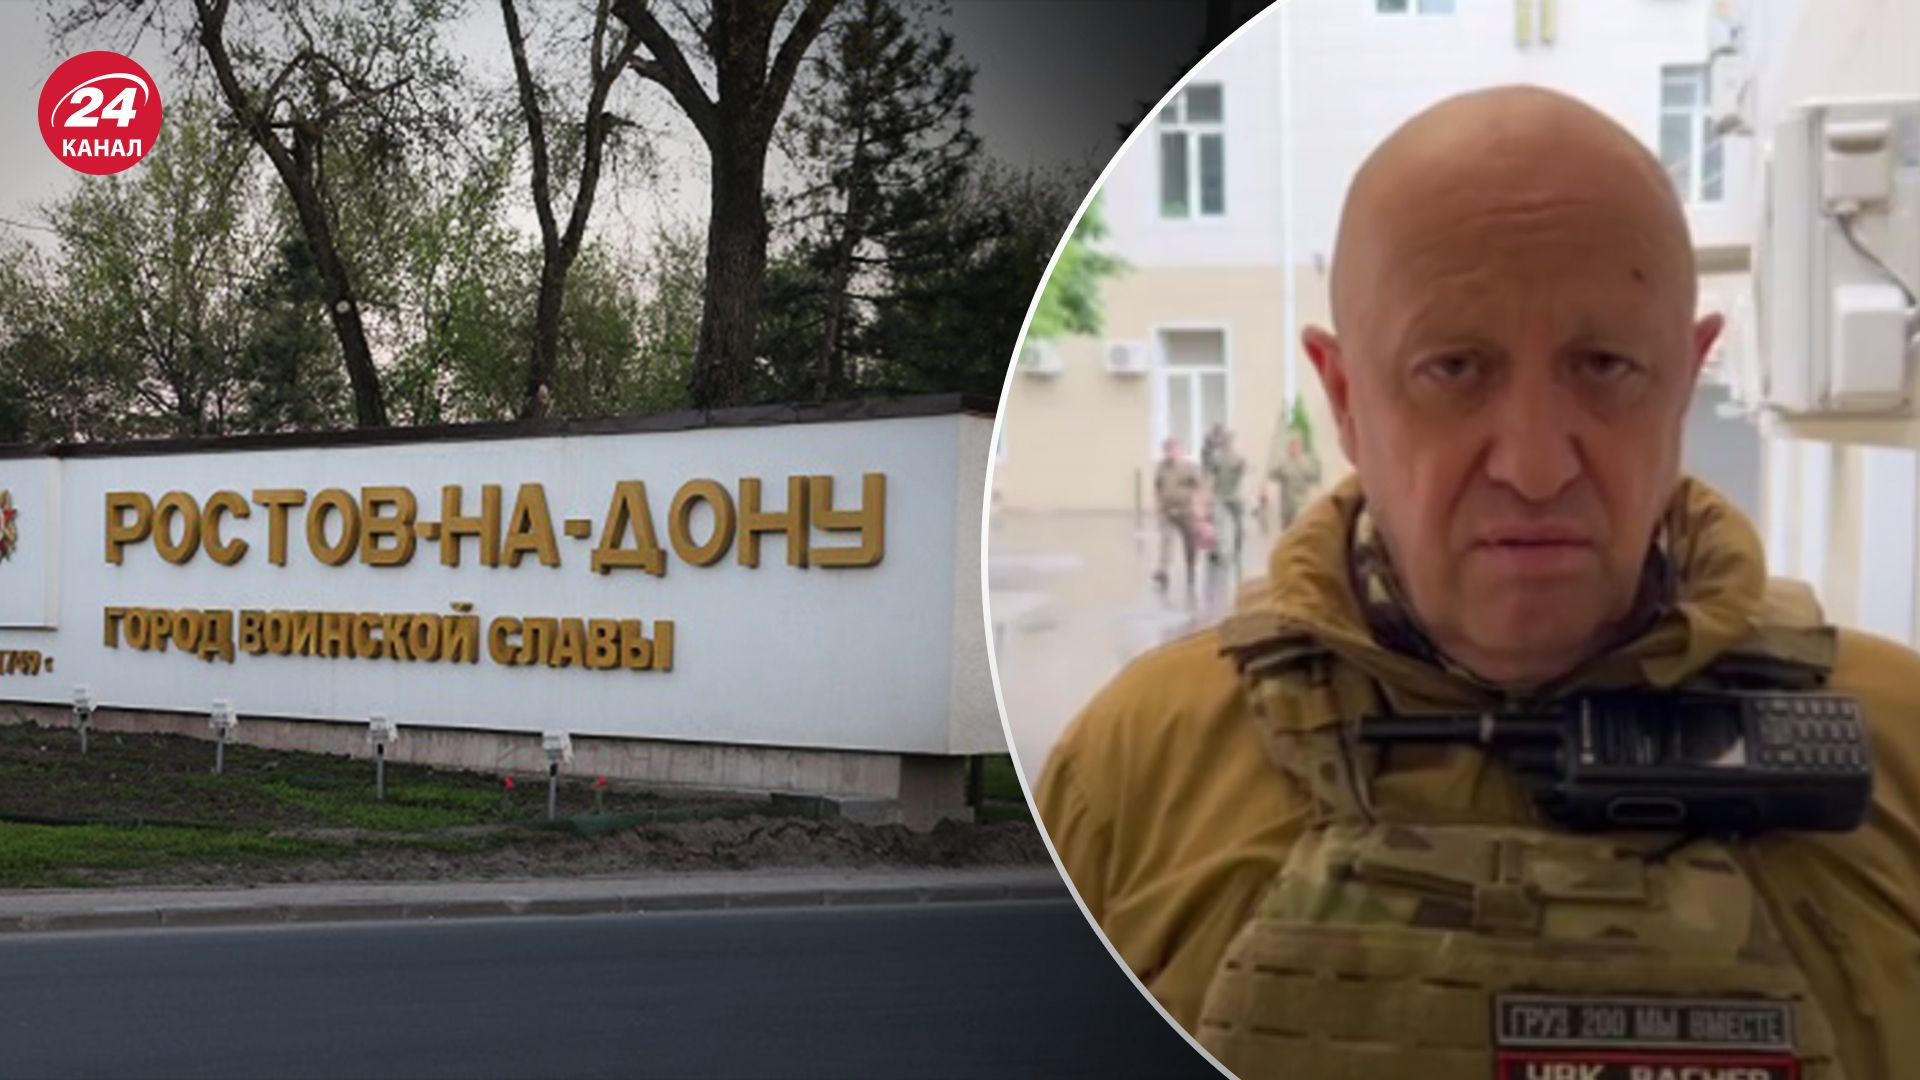 Пригожин заявив про взяття військових об'єктів у Ростові